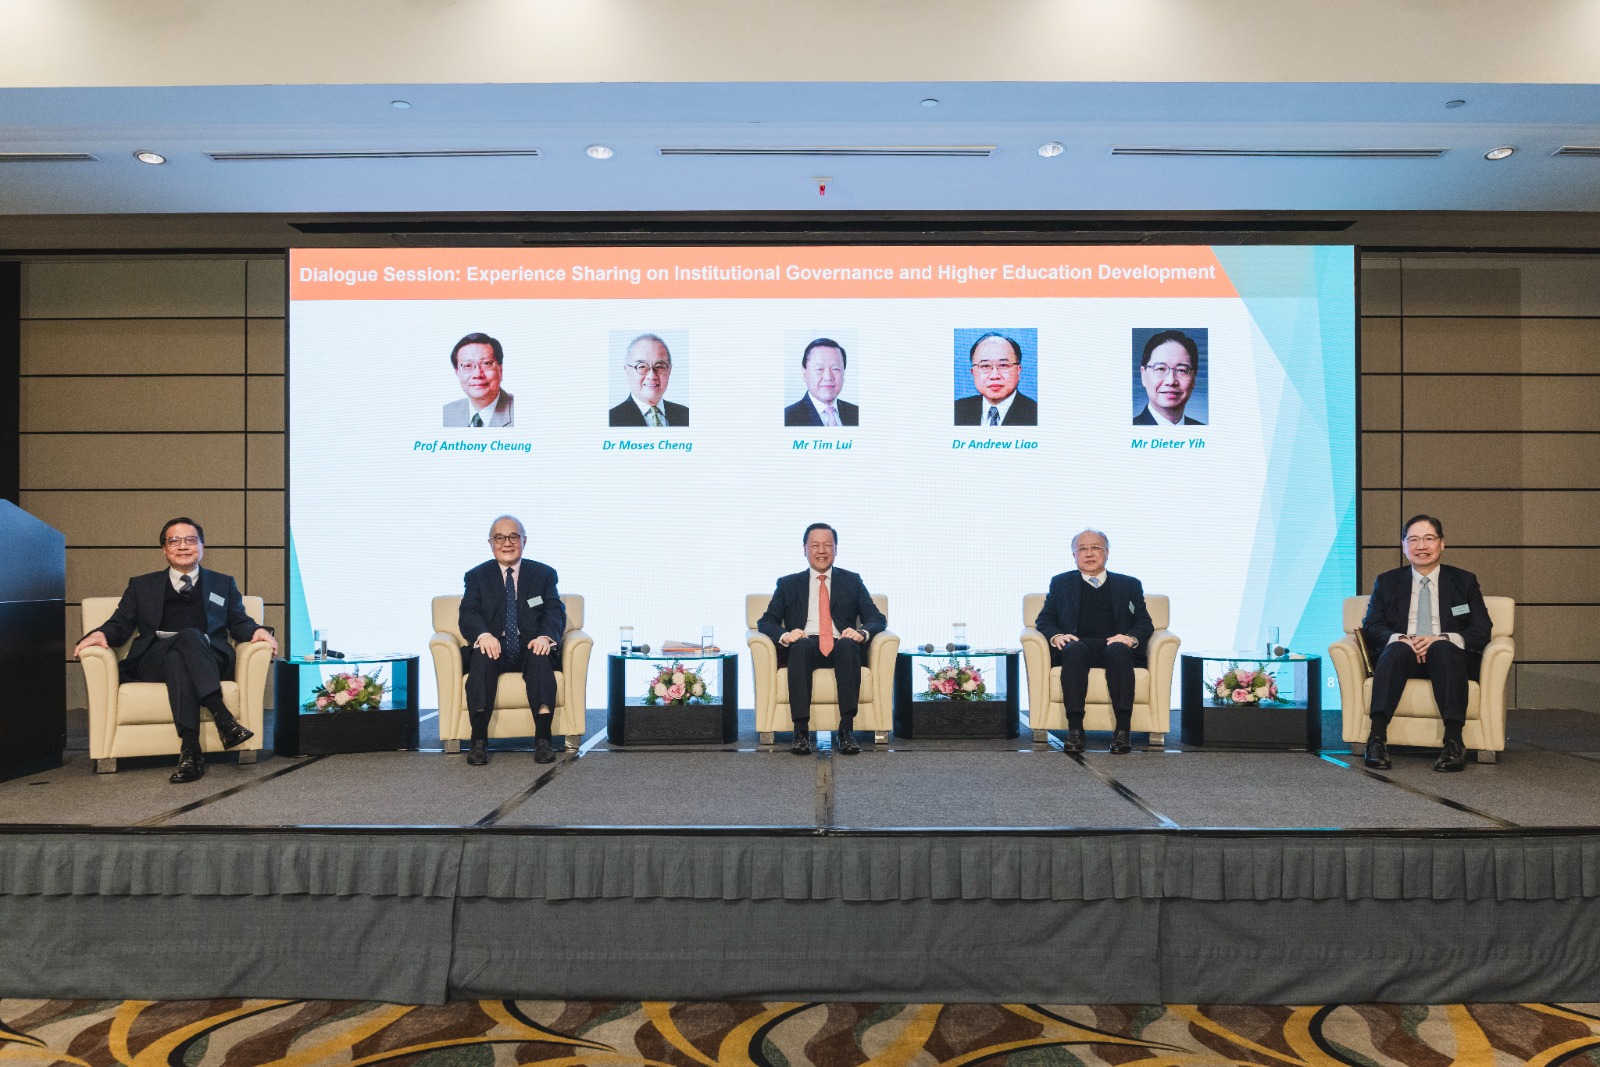 （左至右）张炳良教授、郑慕智博士、雷添良先生、廖长城博士，及叶礼德先生参与对谈环节。